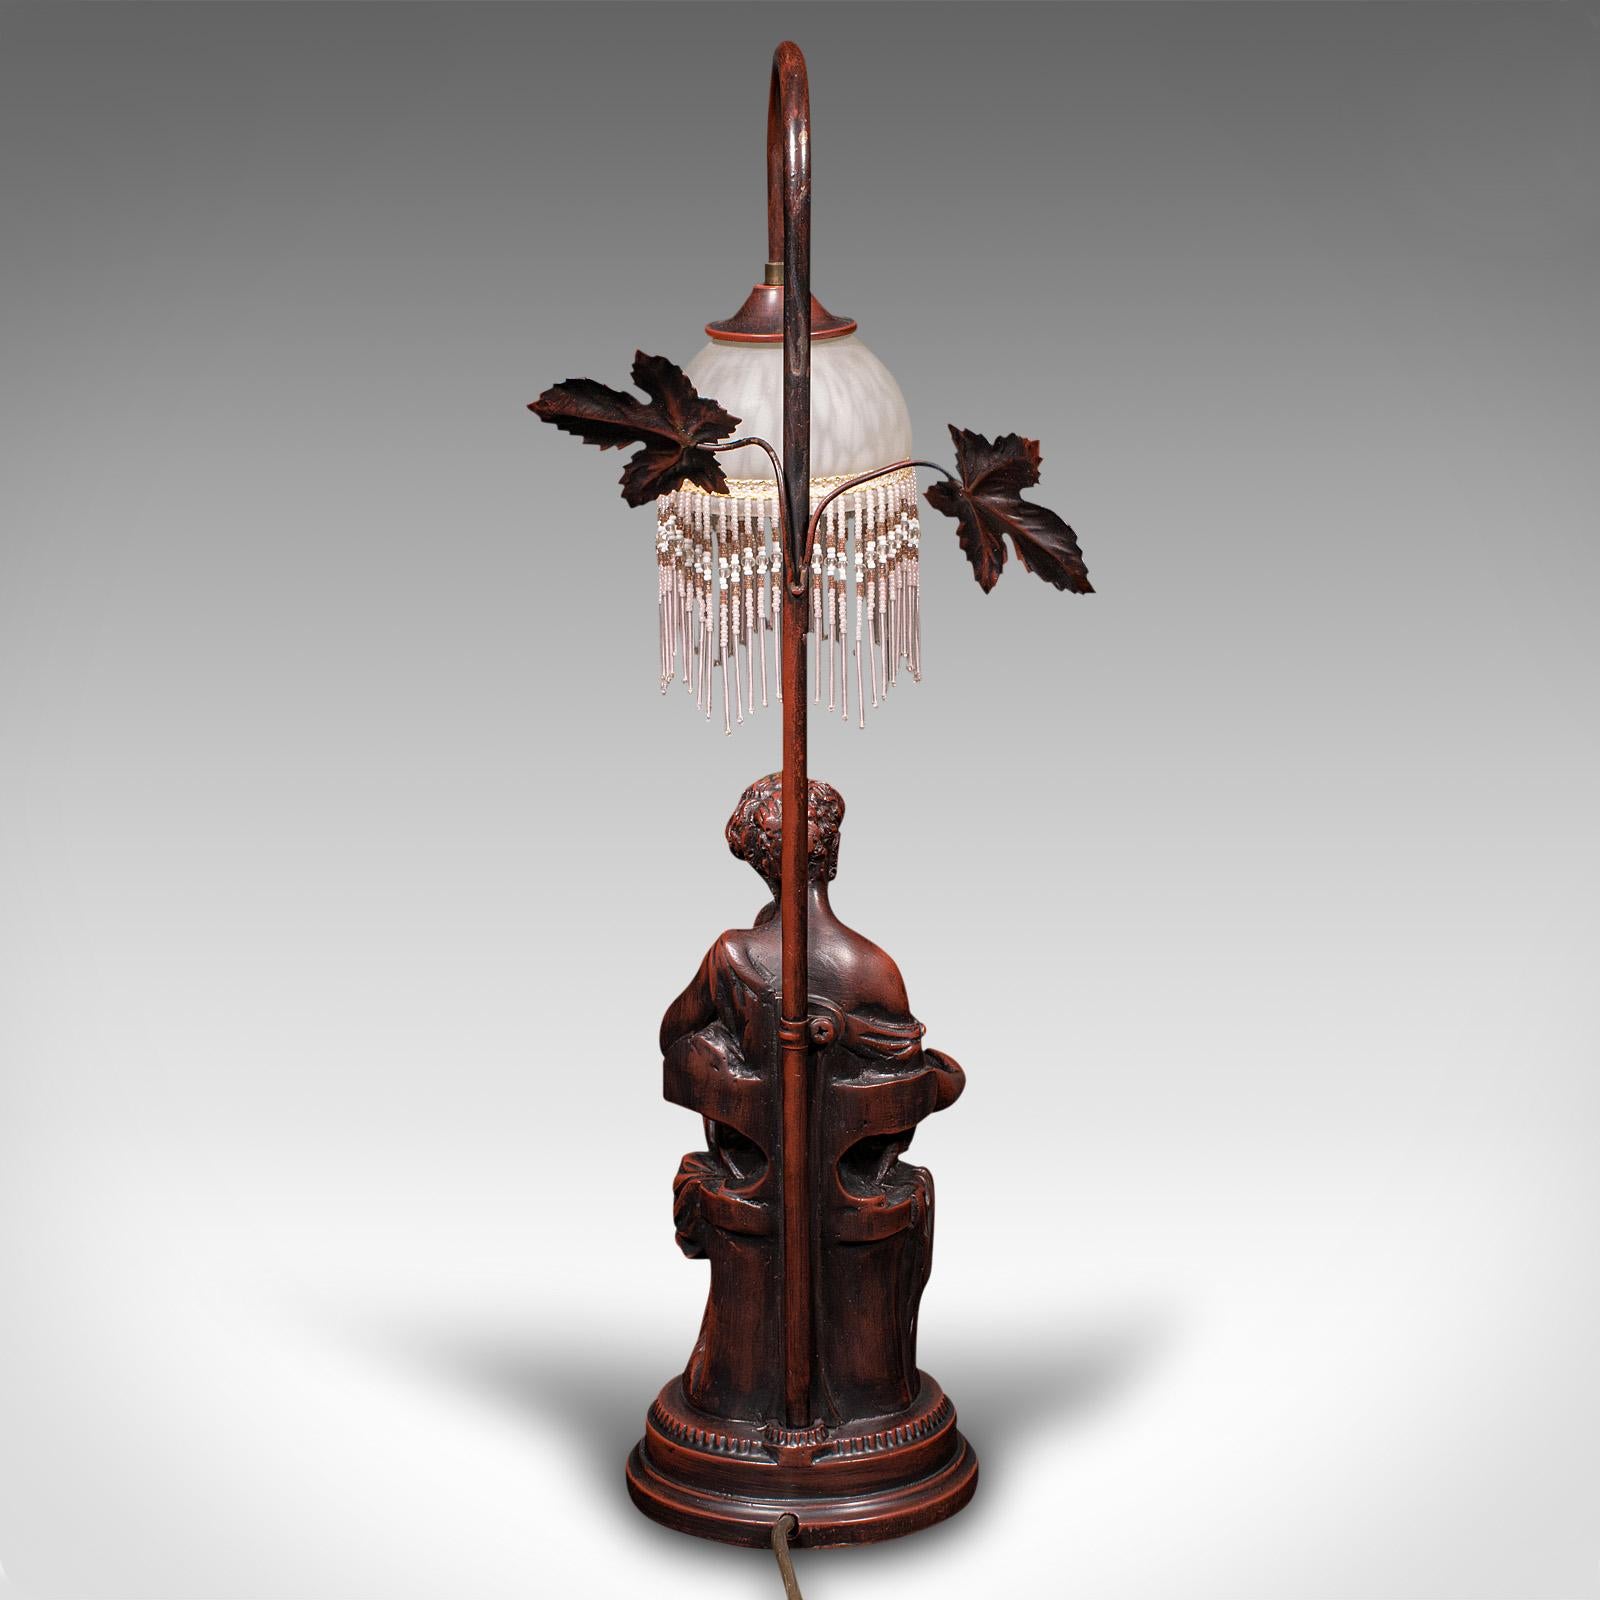 20th Century Vintage Decorative Lamp, French, Bronzed, Figural Light, Art Nouveau Revival For Sale